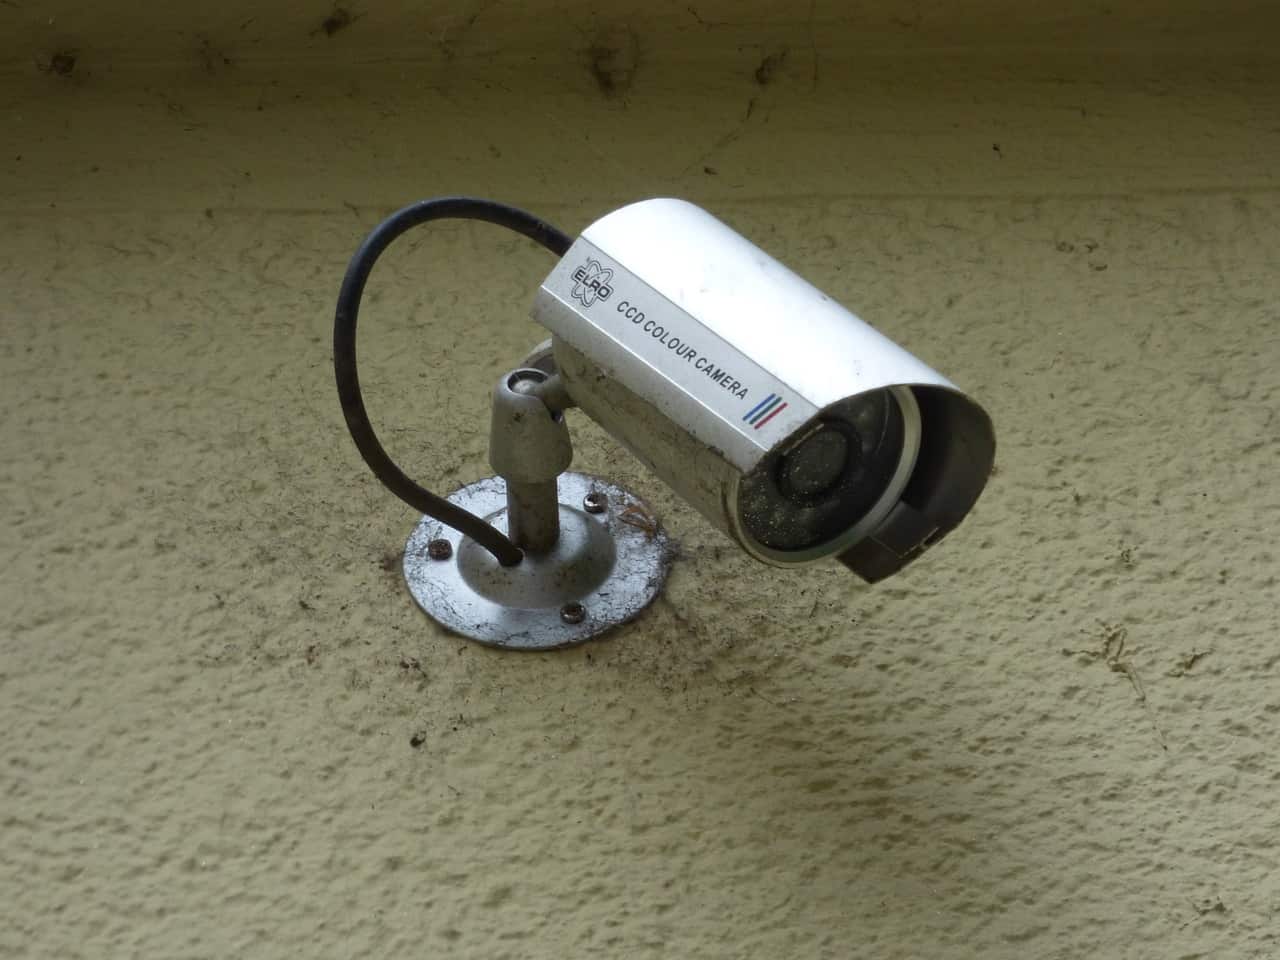 Le migliori telecamere di sicurezza per la tua casa intelligente